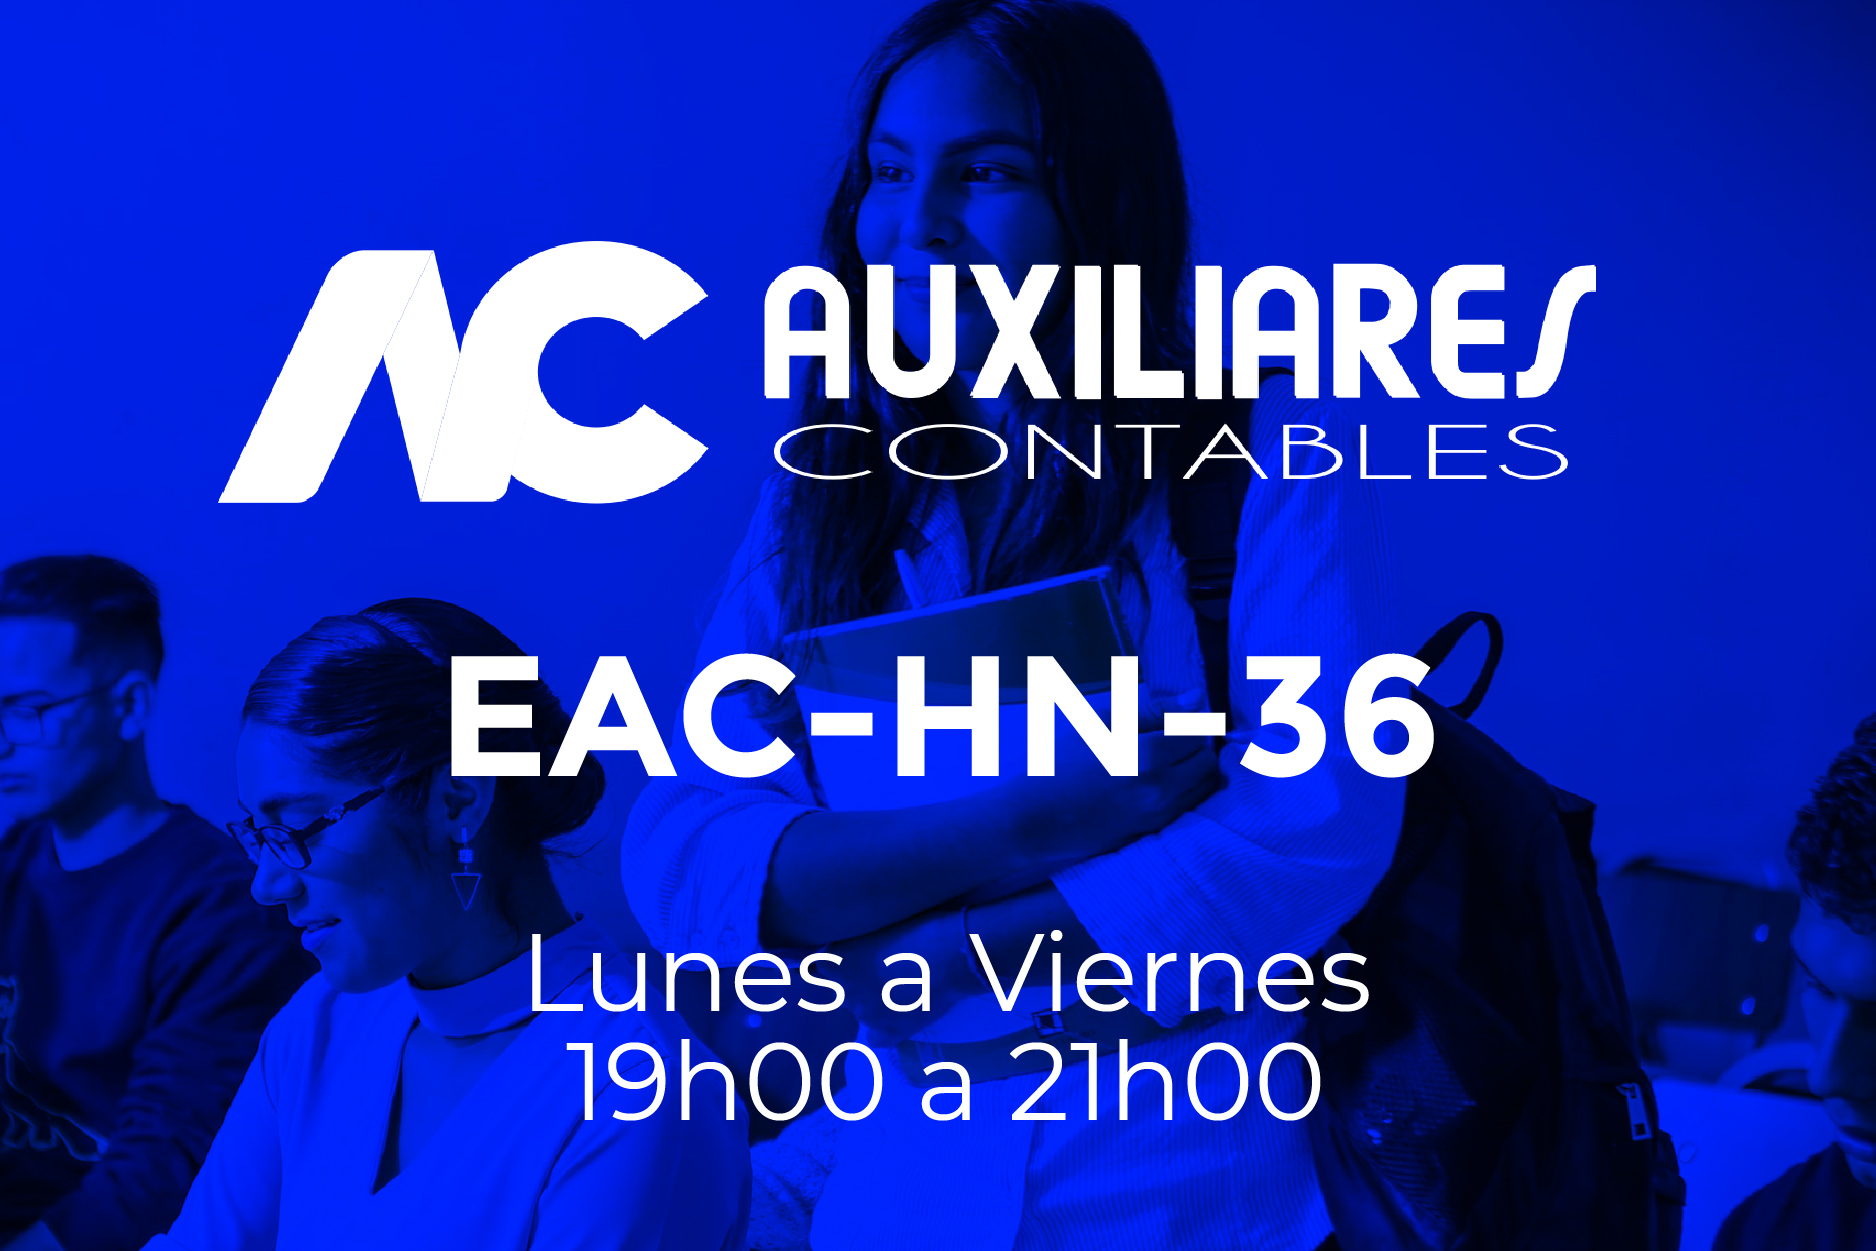 36 - AUXILIARES CONTABLES - LUNES A VIERNES - 19:00 A 21:00